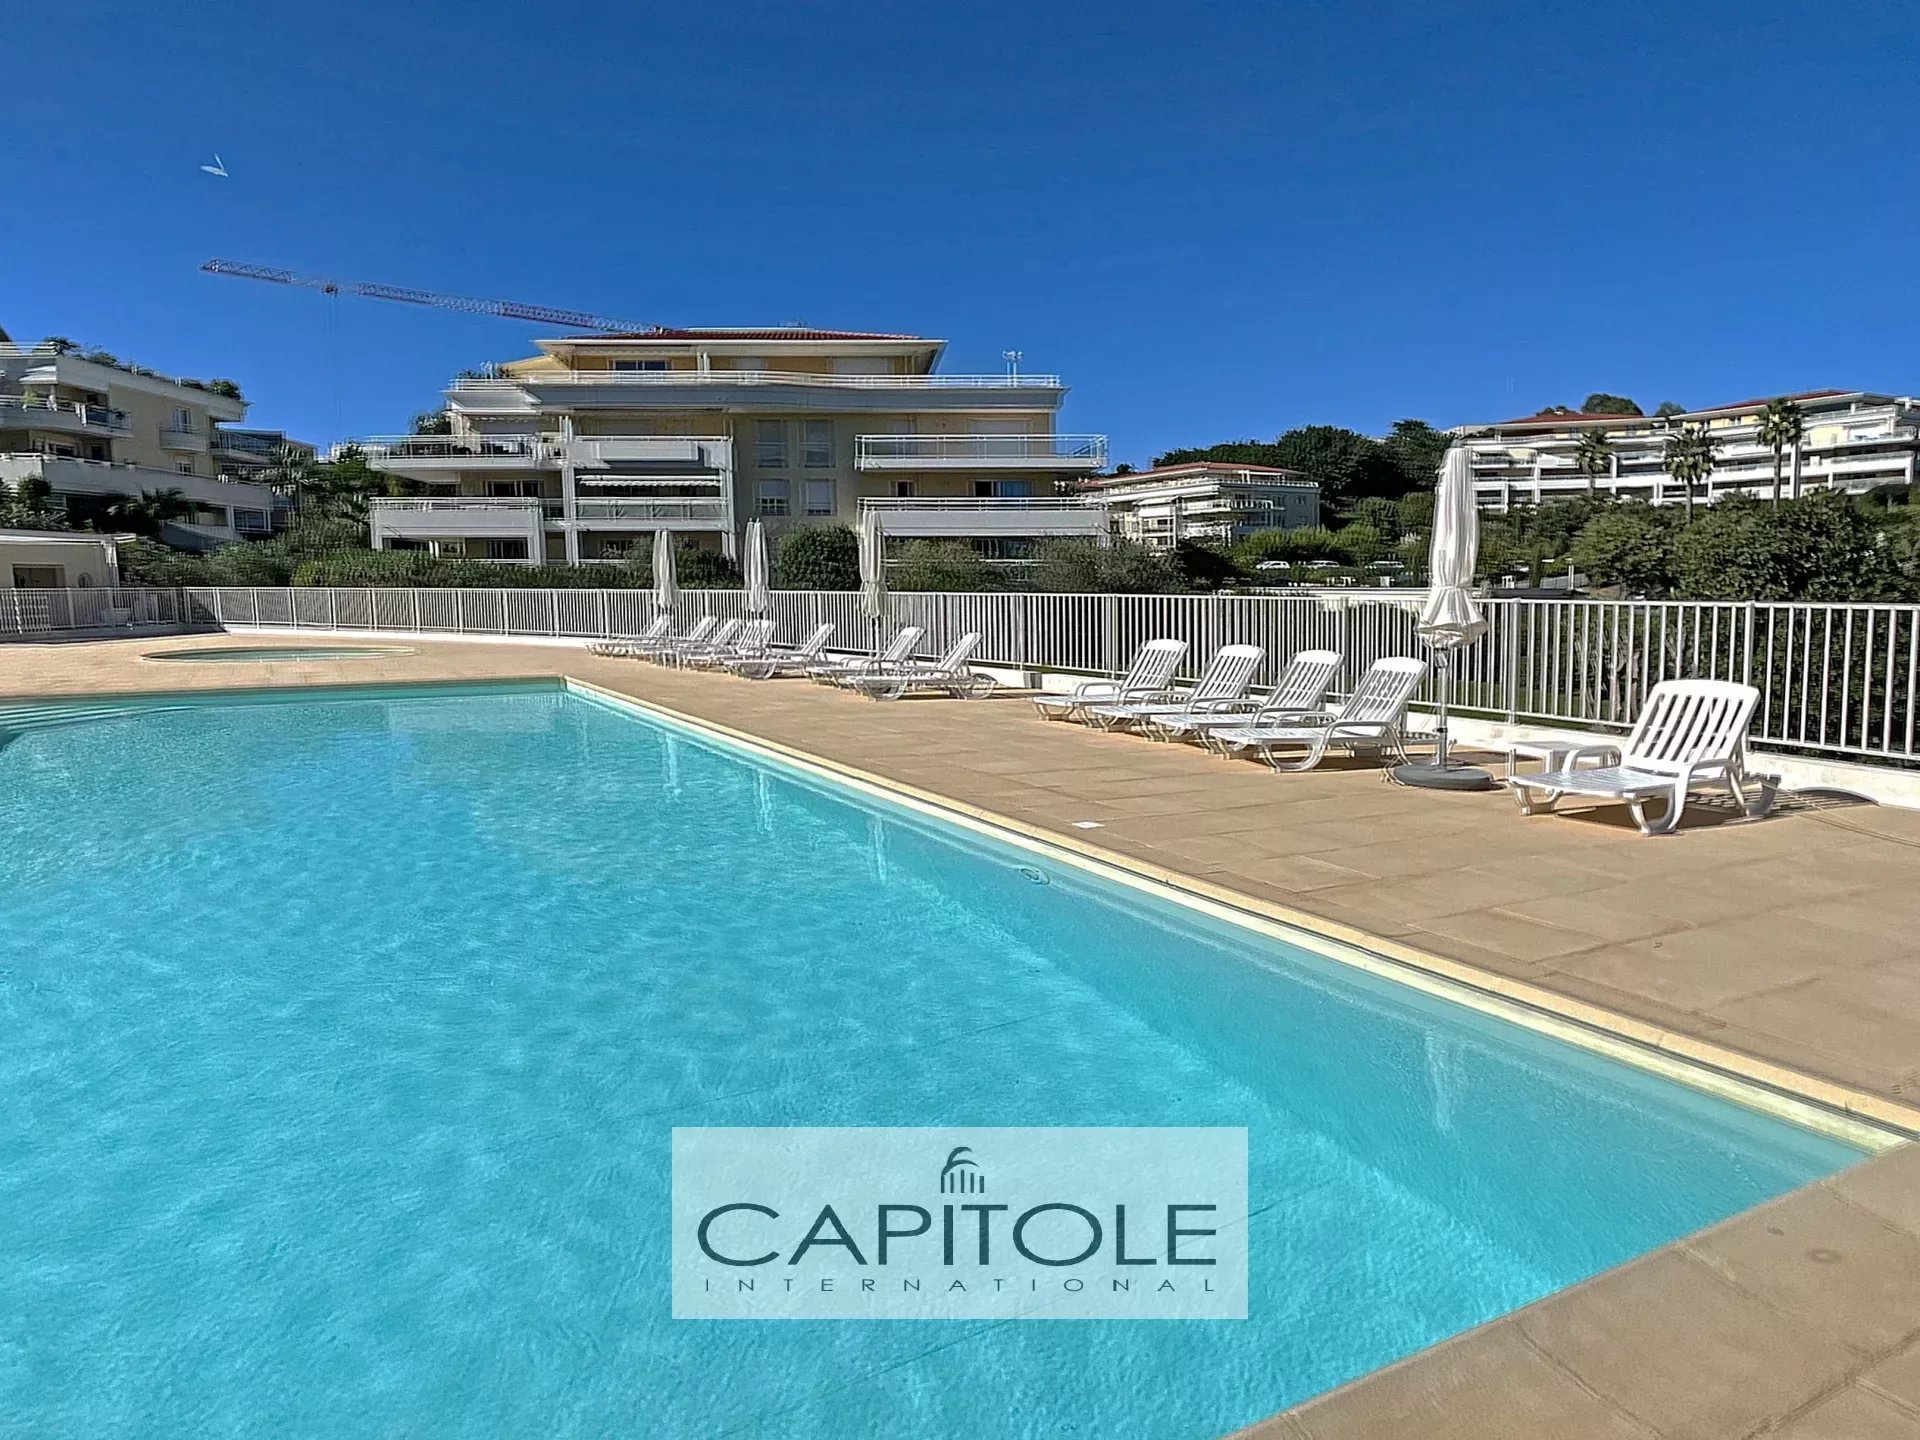 A vendre, Antibes, appartement villa sur le toit 3 pièces 83 m²,  profonde terrasse 70 m² sud ouest, garage